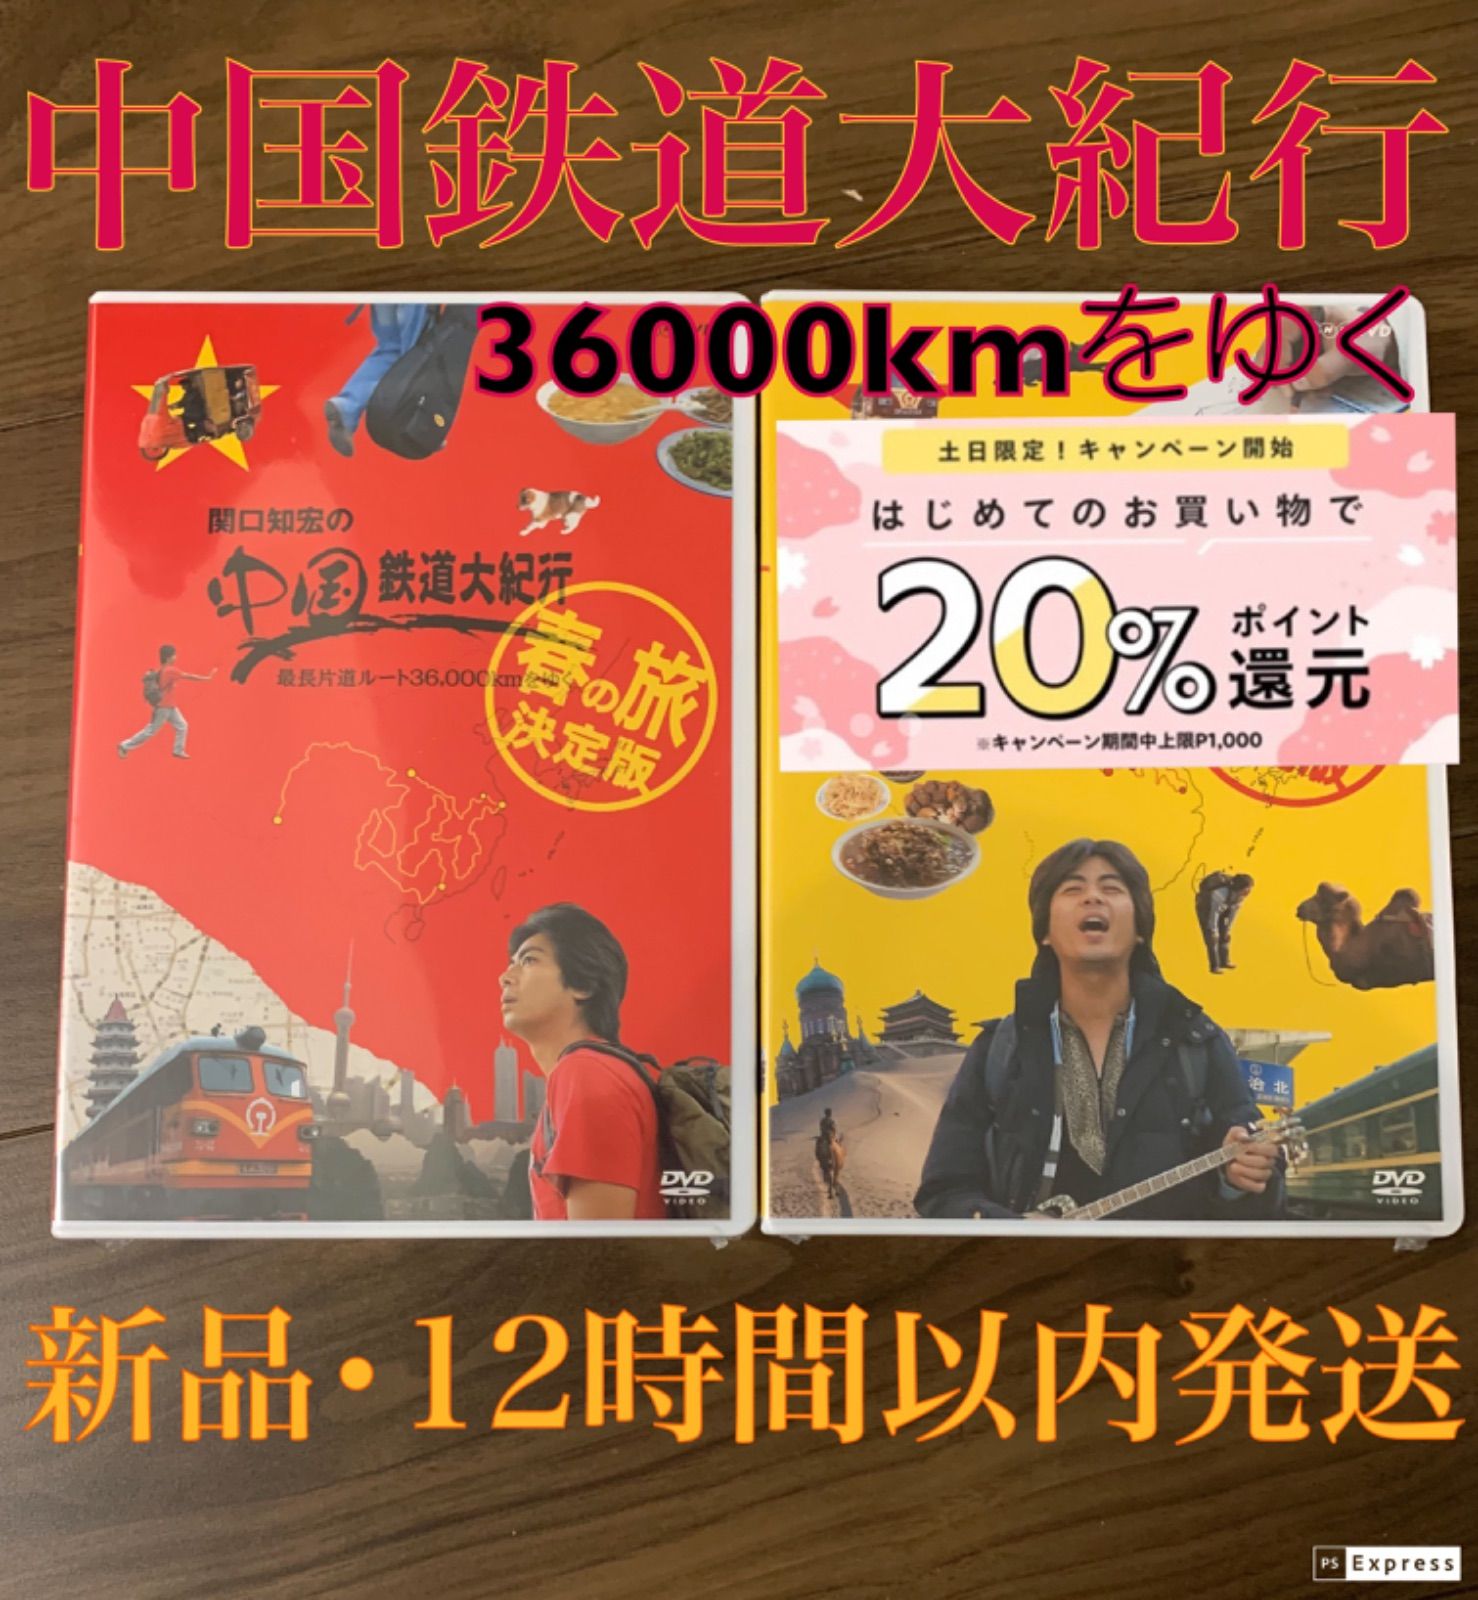 関口知宏の中国鉄道大紀行 春・秋の旅DVD BOX - DVD/ブルーレイ